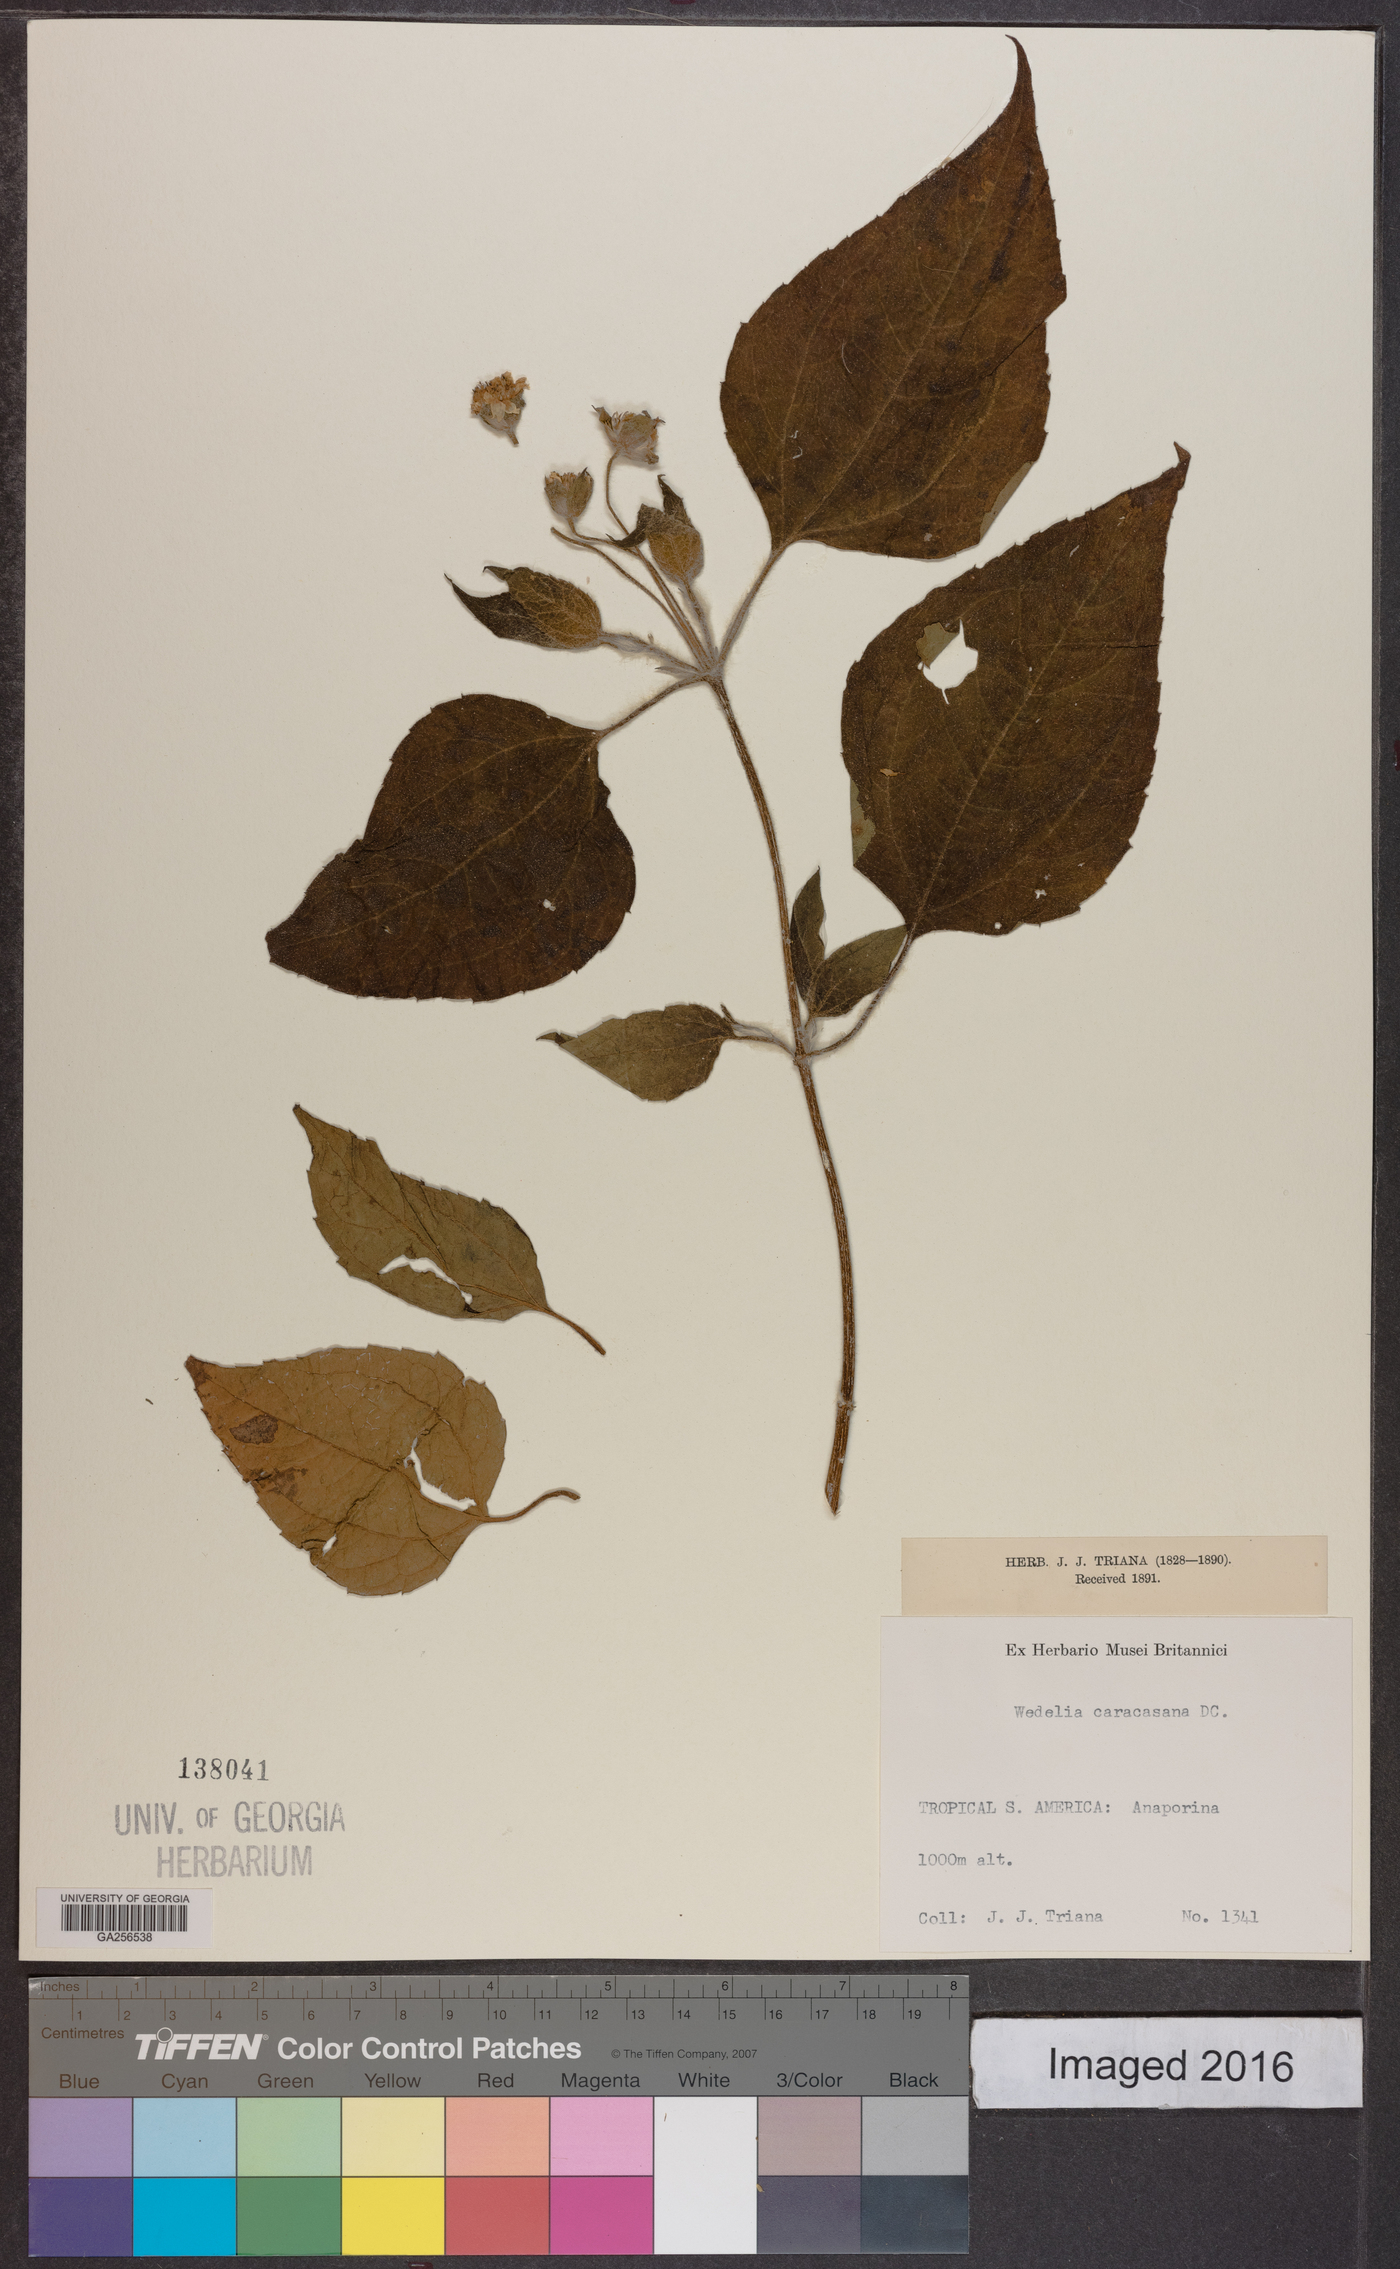 Wedelia fruticosa image